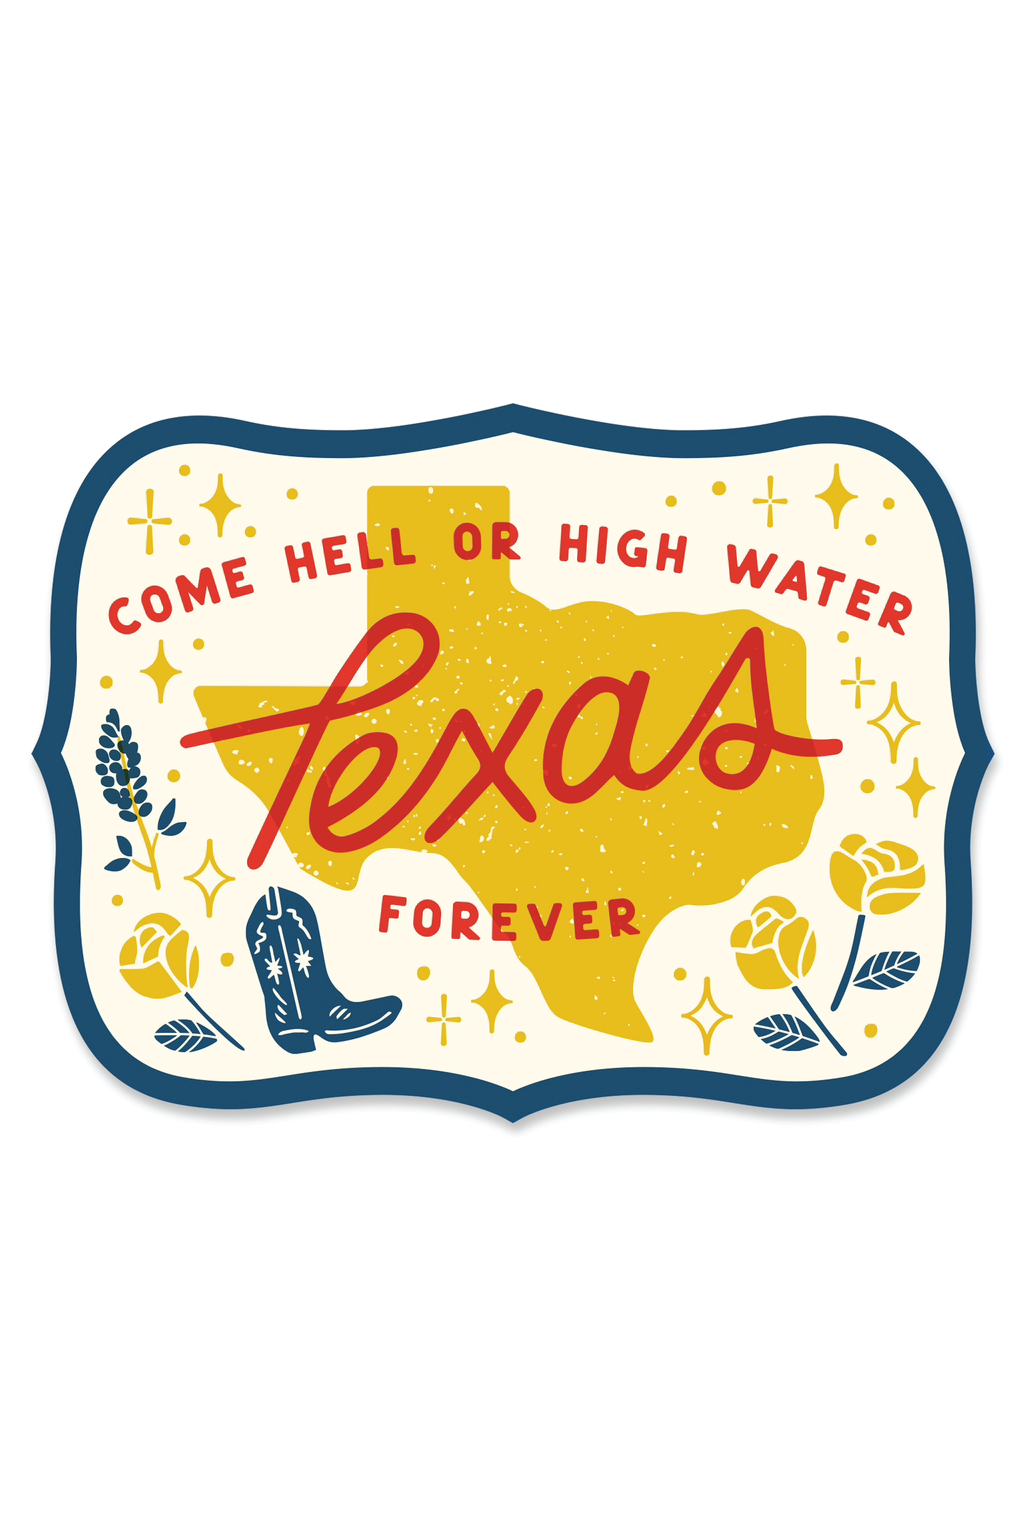 Texas Forever Sticker